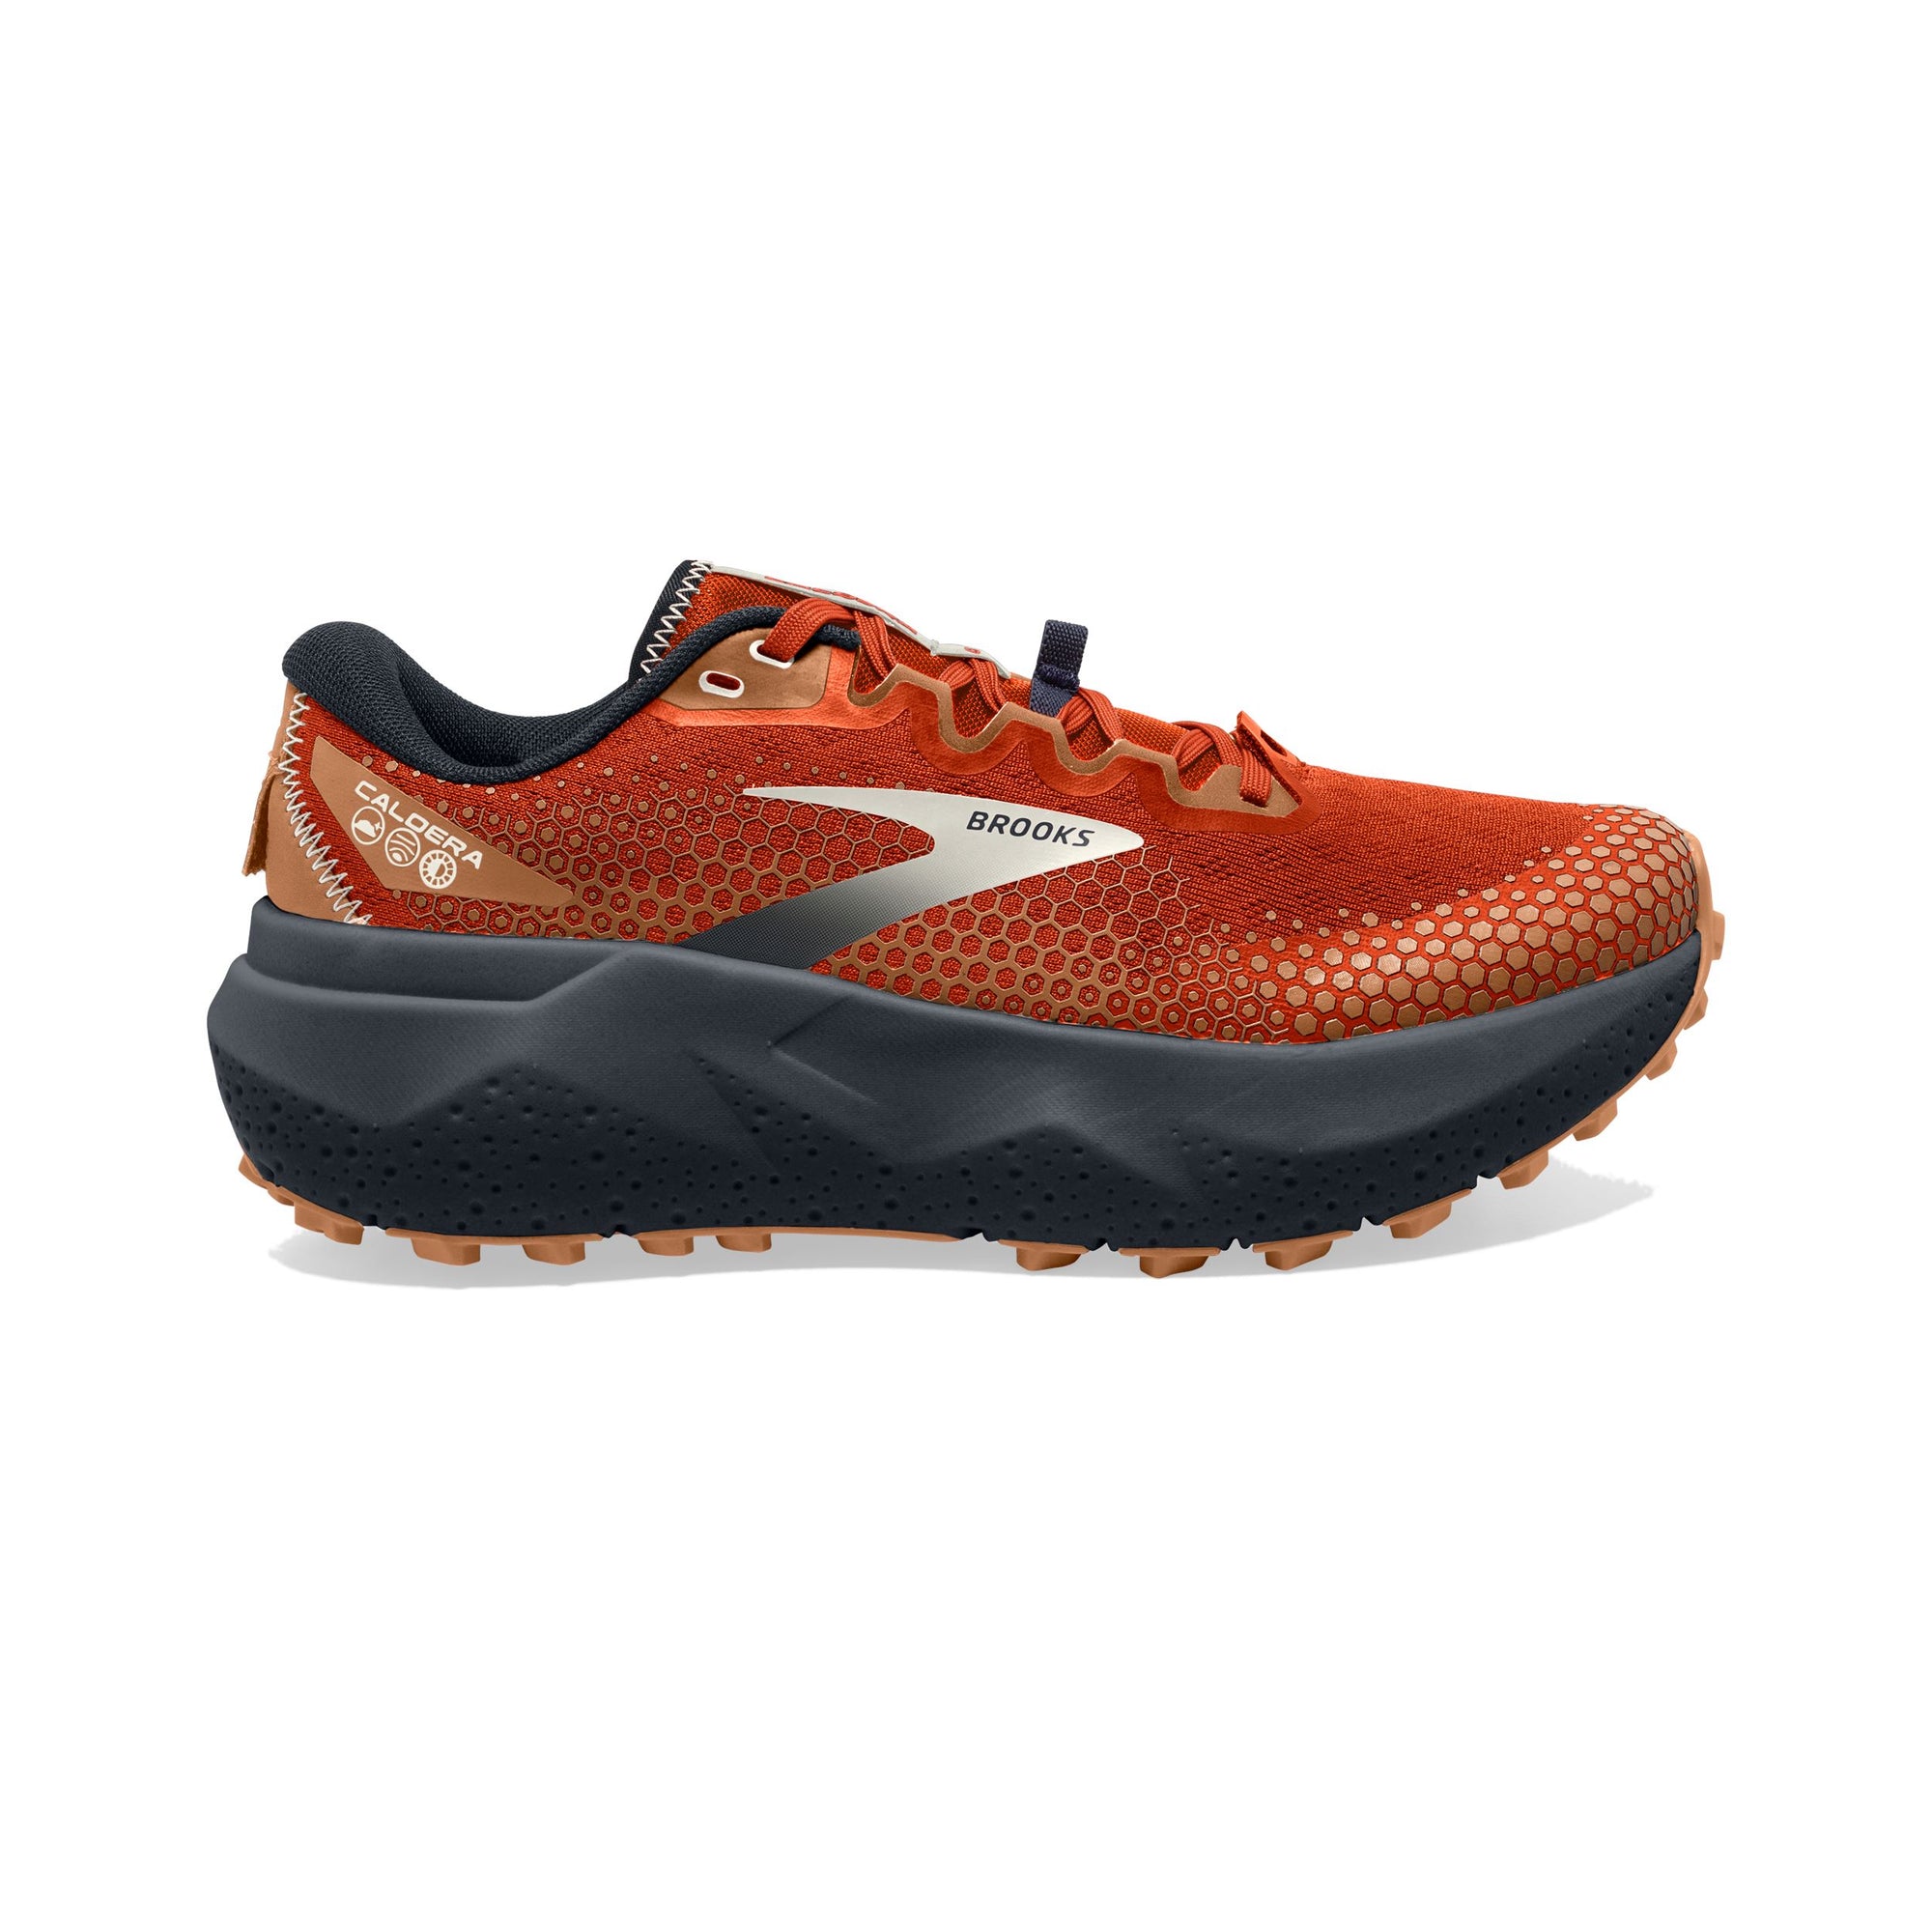 Brooks Men's Caldera 6 Trail Running Shoes Navy/Firecracker/Sharp Green US 8.5 